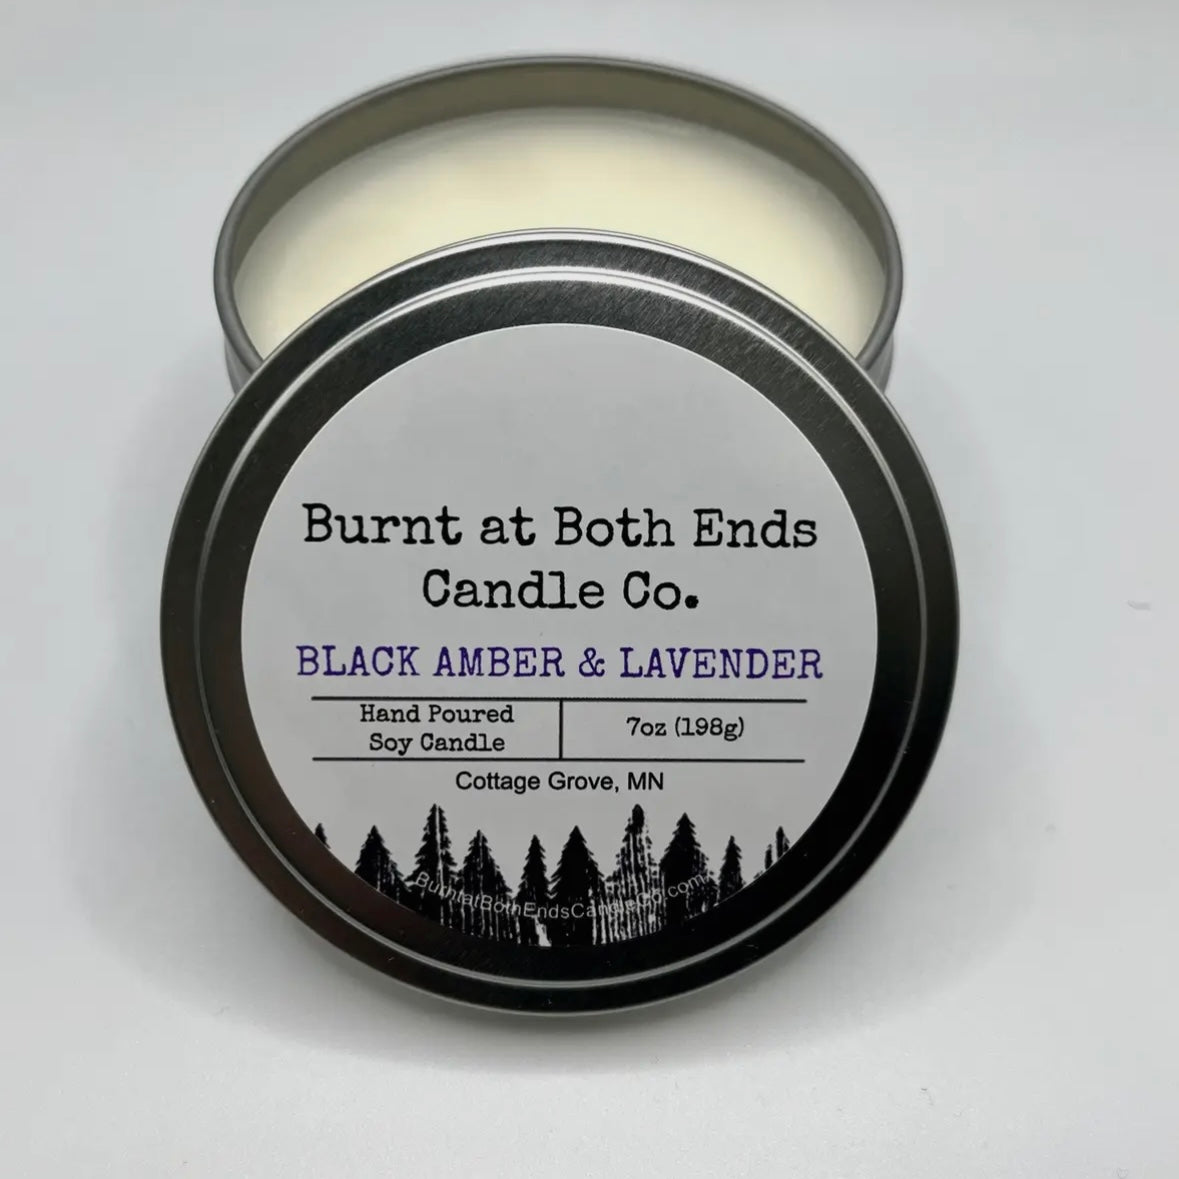 Burnt at Both Ends Candle - 7oz Tin - Black Amber & Lavender